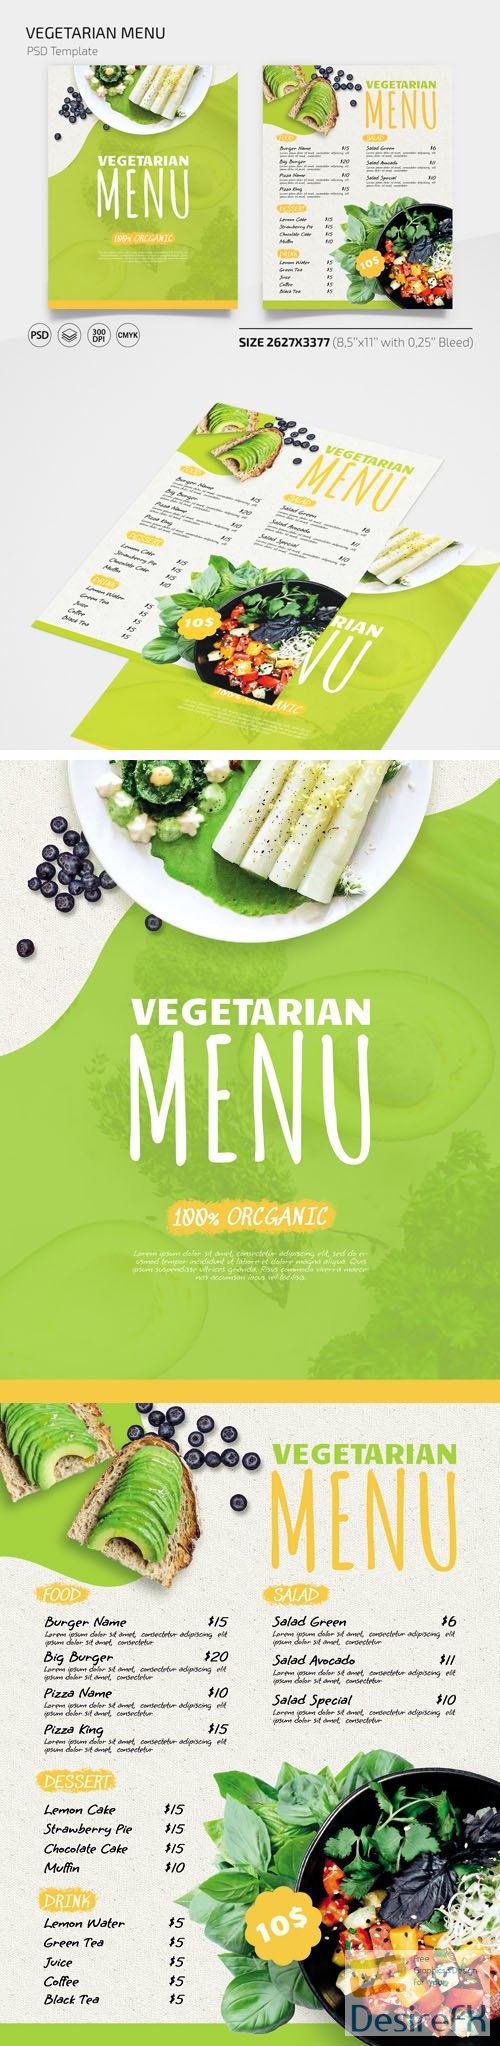 Vegetarian Menu PSD Templates